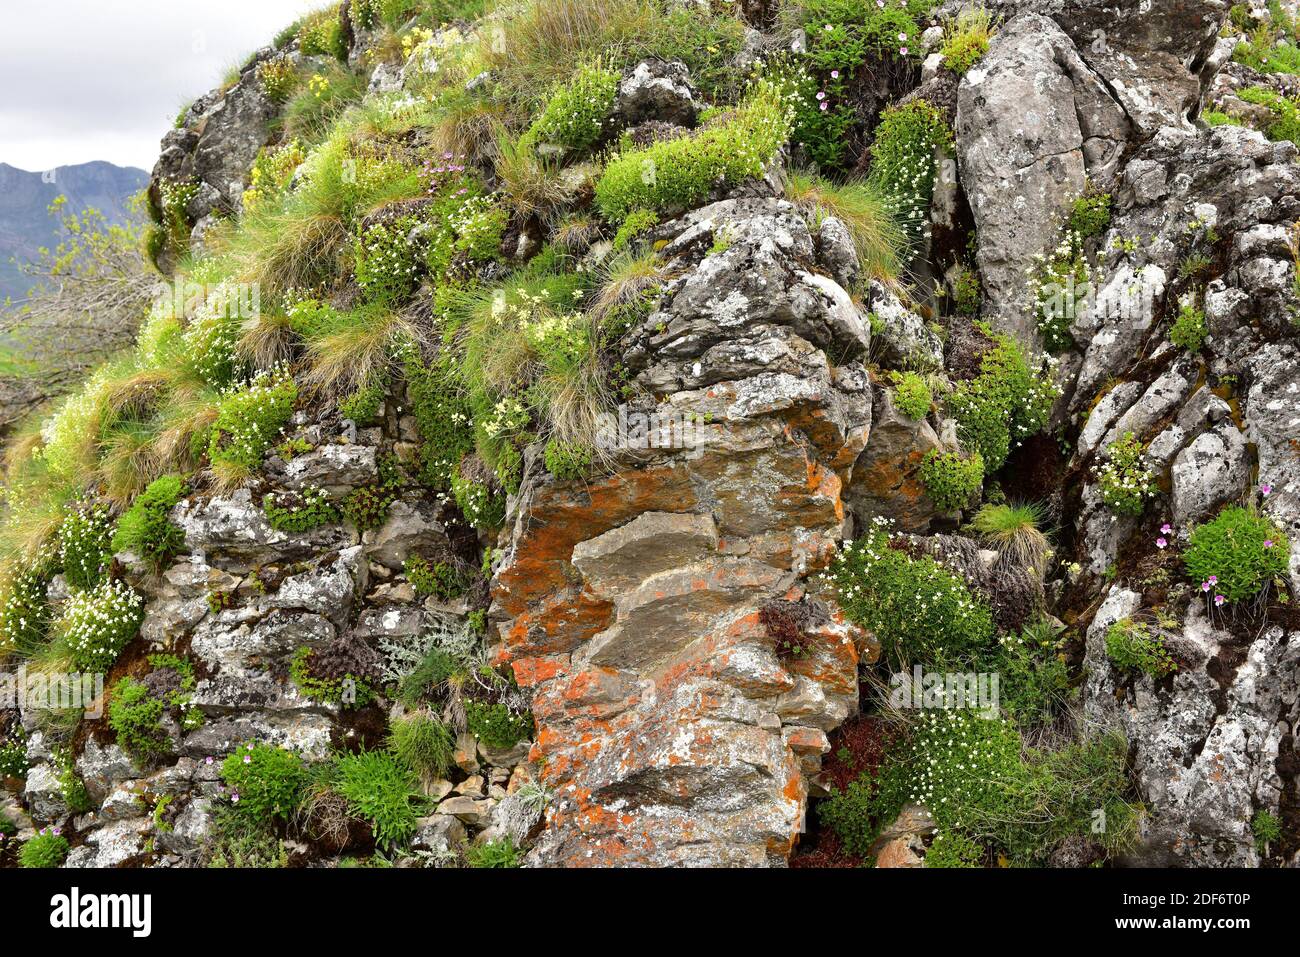 Saxifraga babiana ist eine mehrjährige Pflanze, die in den kantabrischen Bergen (Asturien und Leon) endemisch ist. Dieses Foto wurde in Babia, Leon Provinz, aufgenommen. Stockfoto